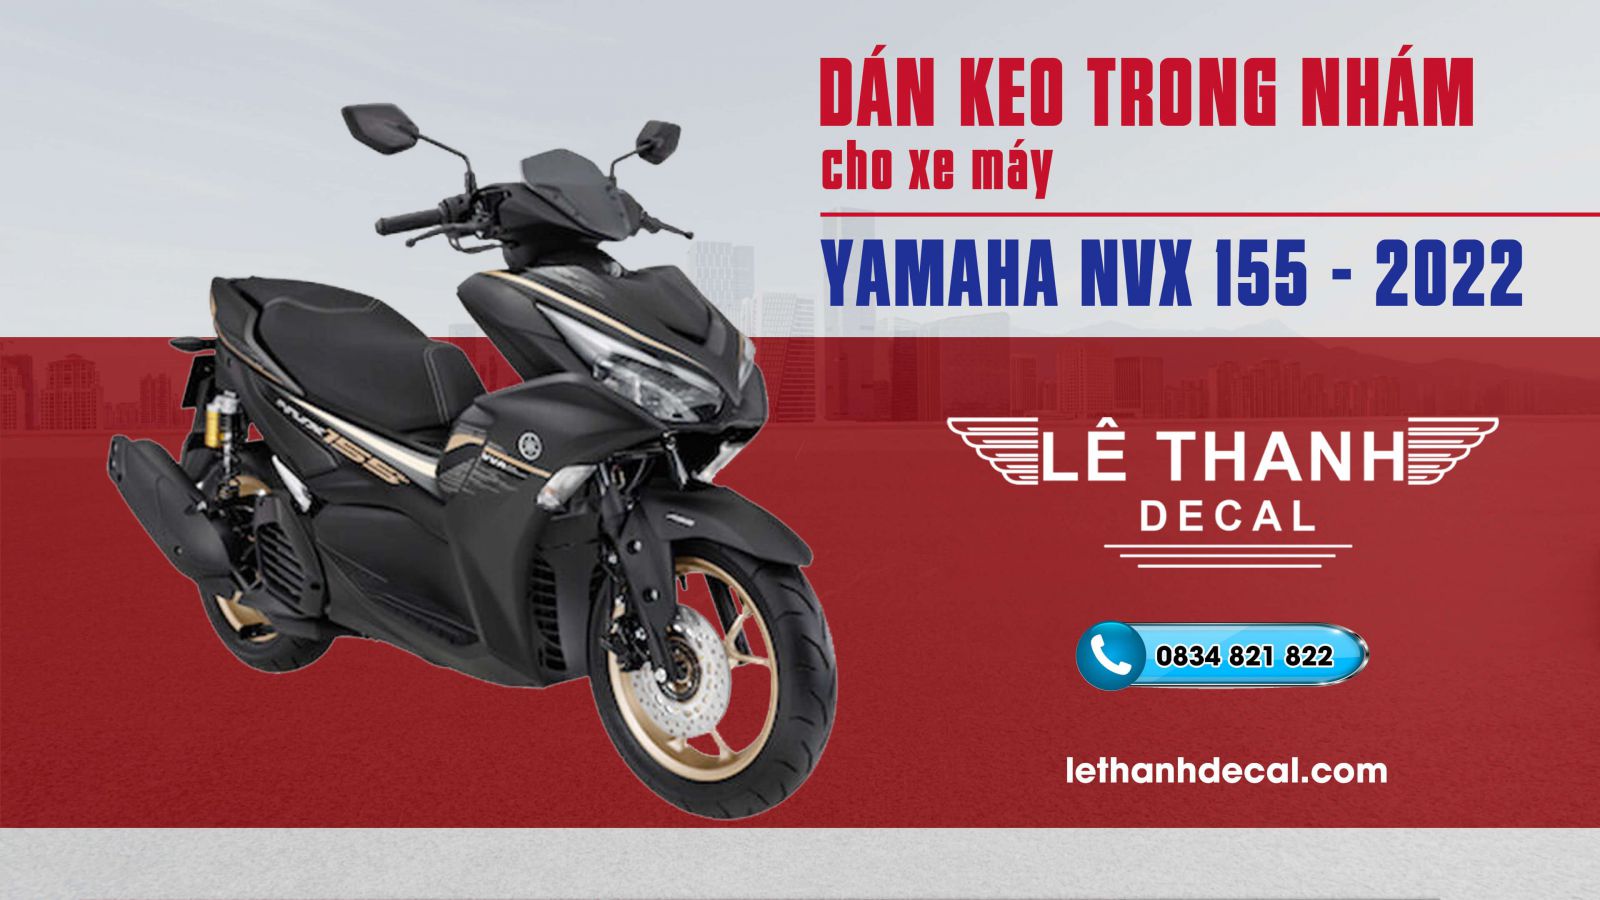 Xe Yamaha NVX 125 Deluxe 2020 Đen nhám  Shopee Việt Nam